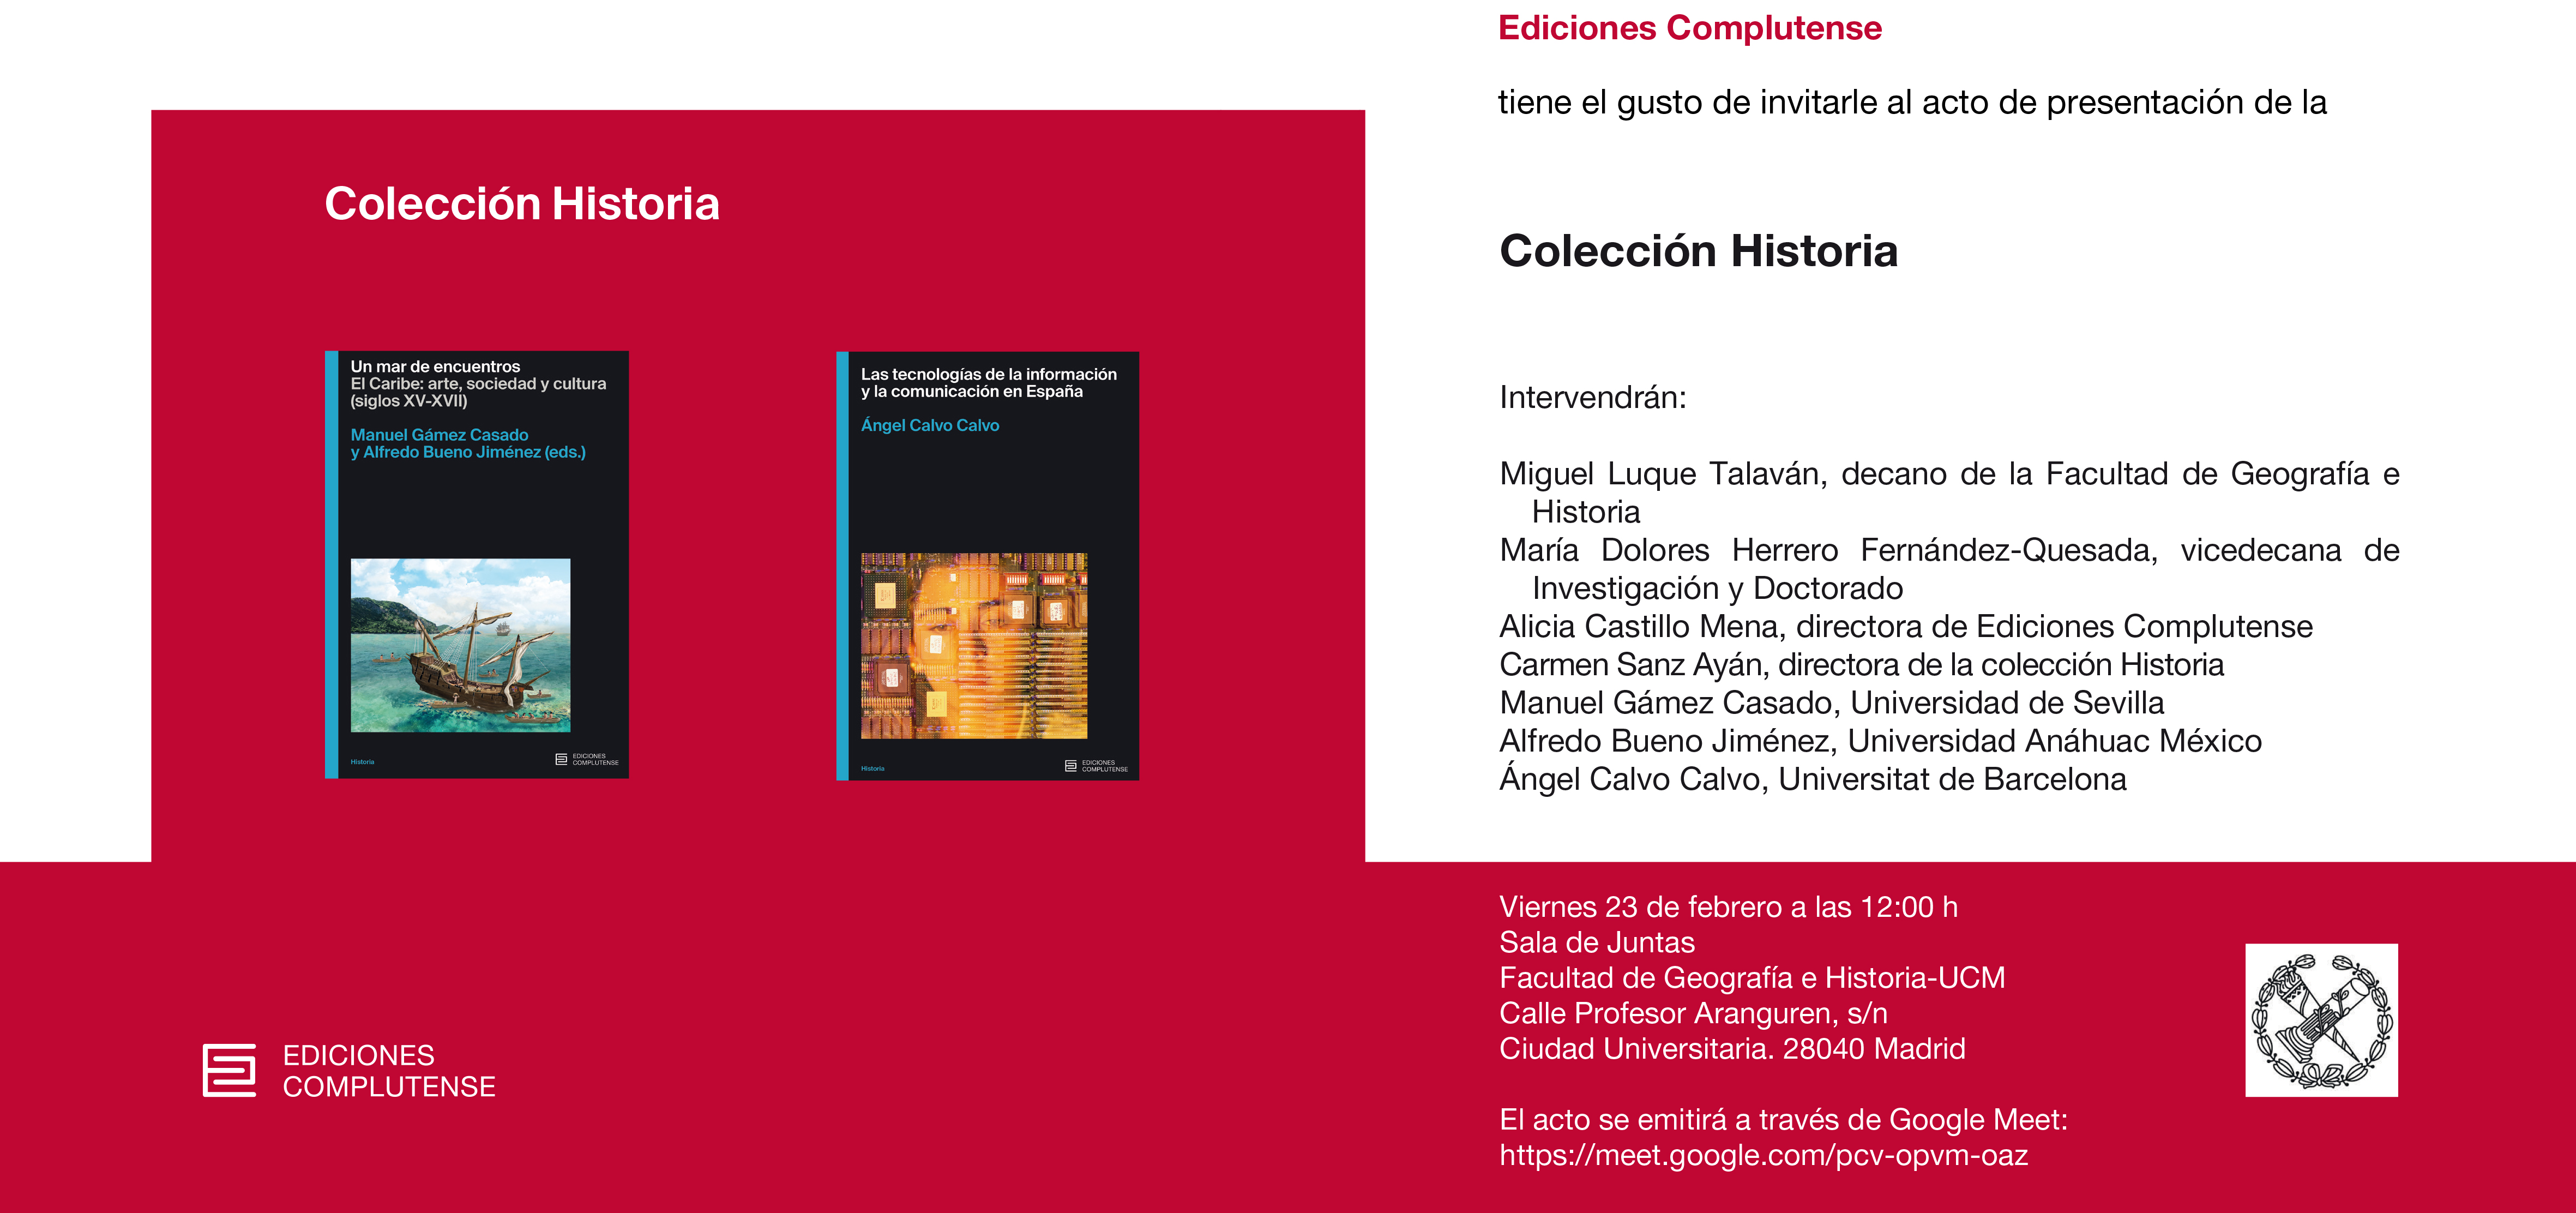 Presentación Colección Historia Ediciones UCM. Viernes 23 de febrero.